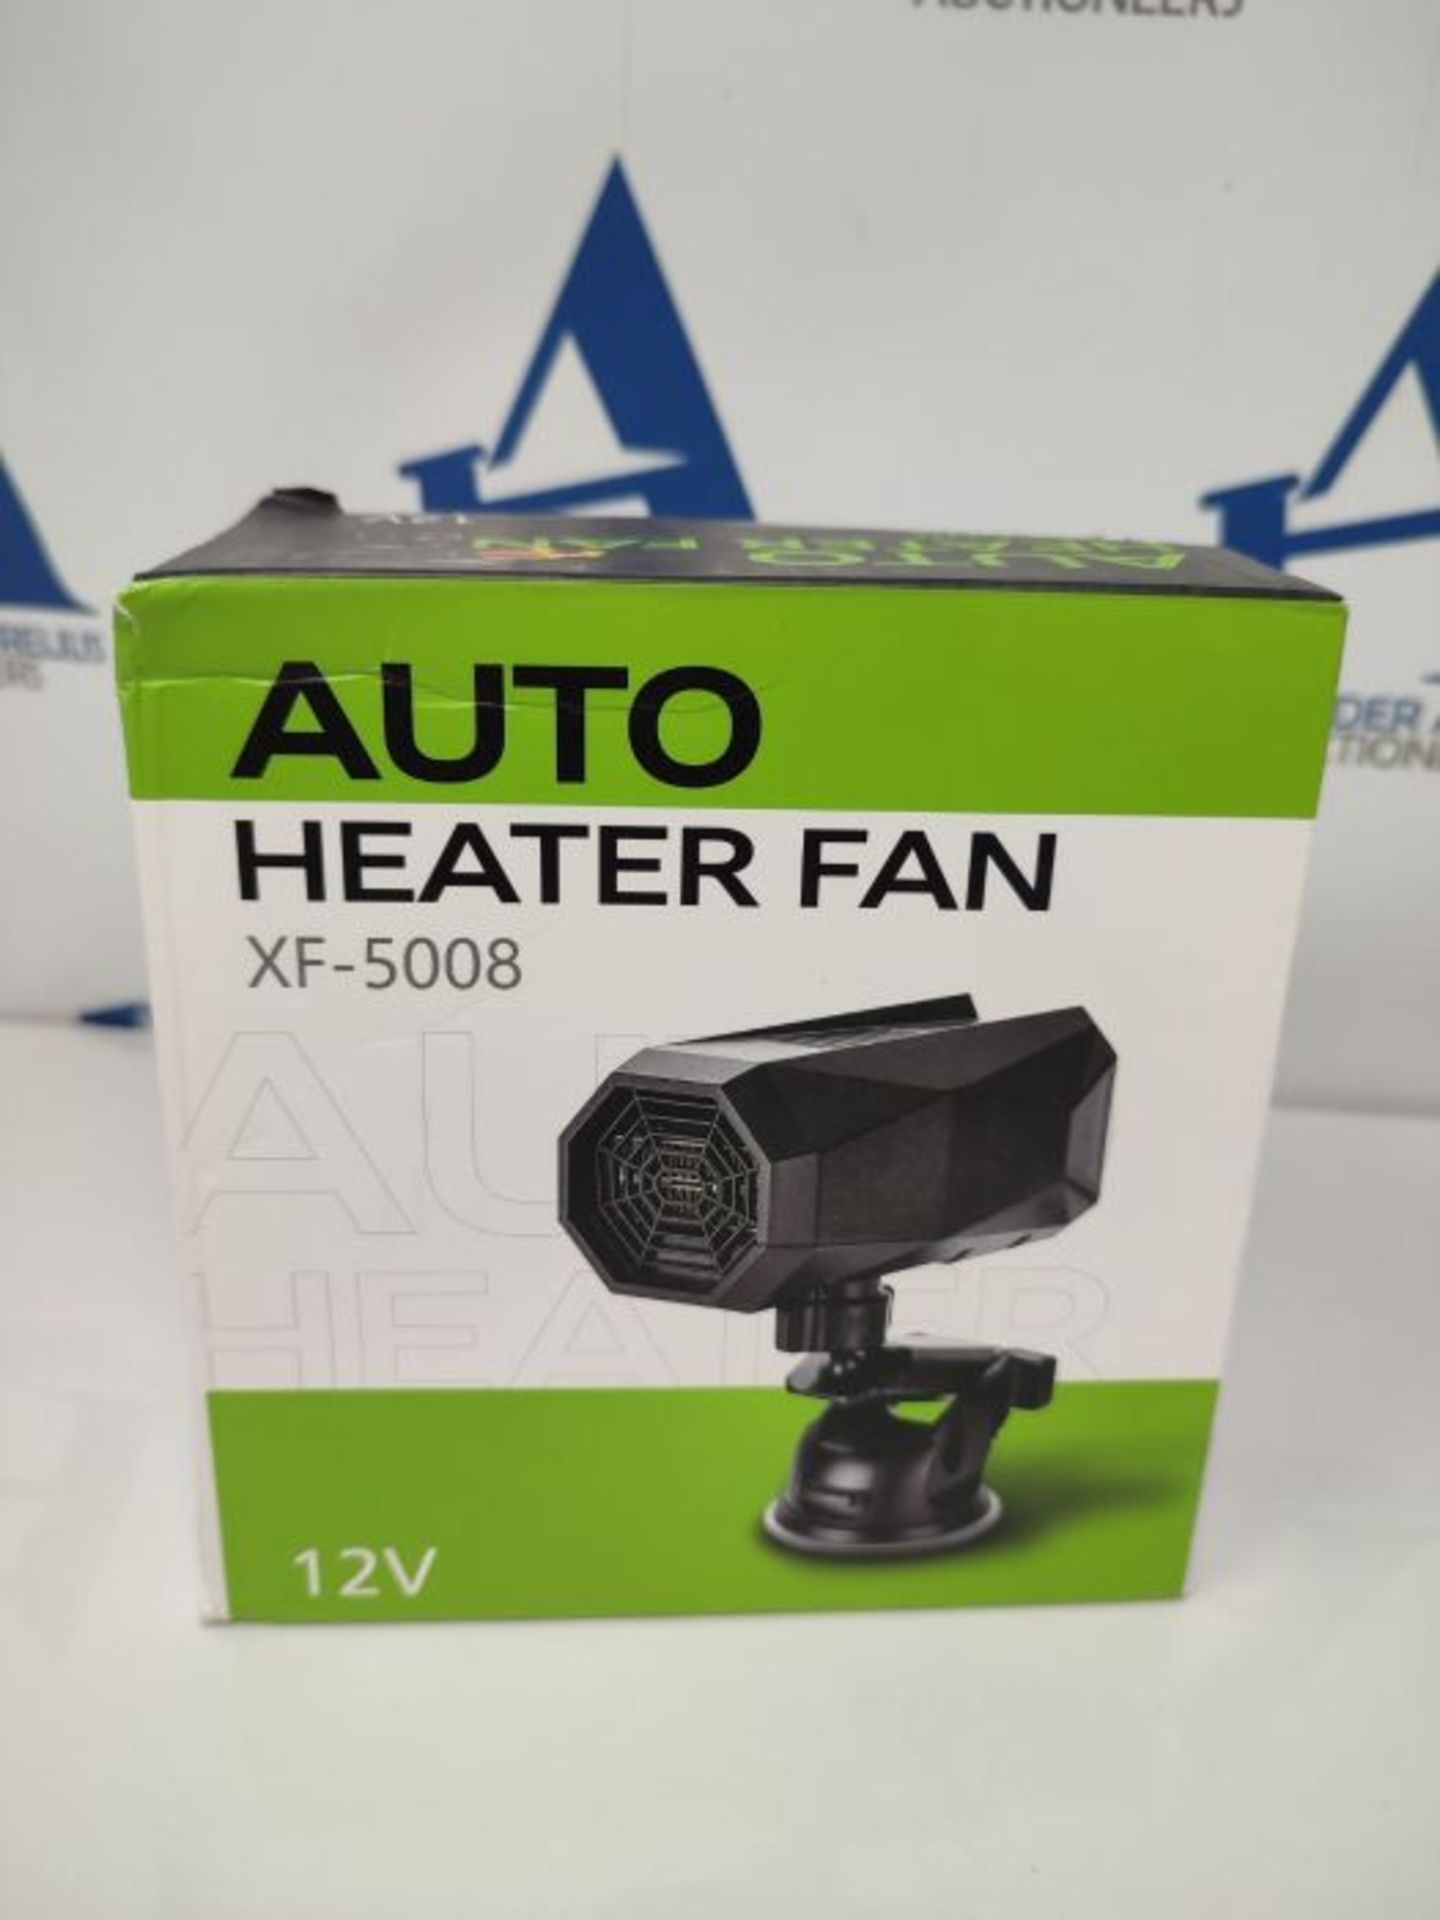 Auniq Car Heater, 2 in 1 Portable Car Heater Fan 12V 150W Defogger Demister Fan Windsh - Image 2 of 3